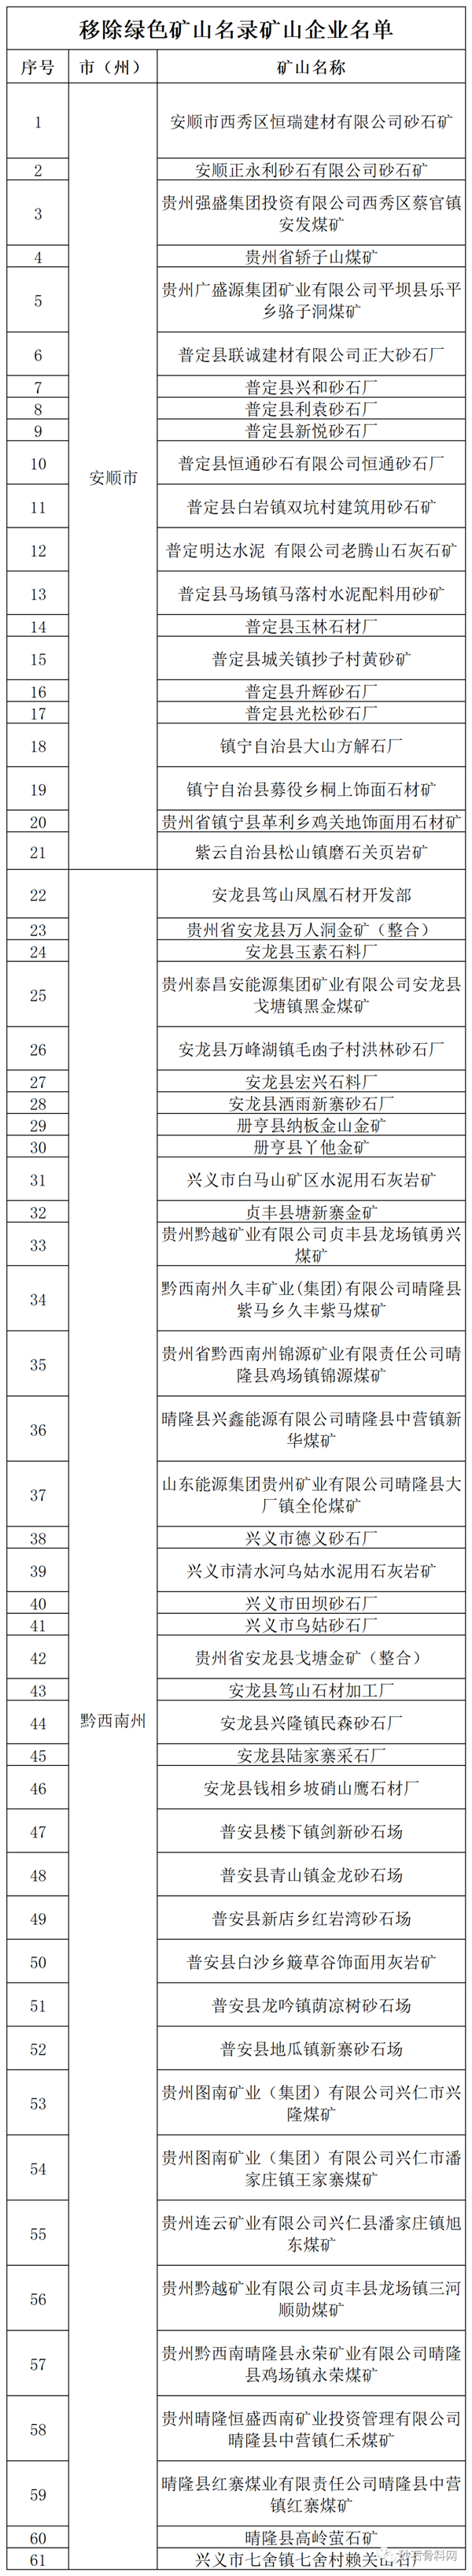 贵州省338个矿山企业被移除省级绿色矿山名录！